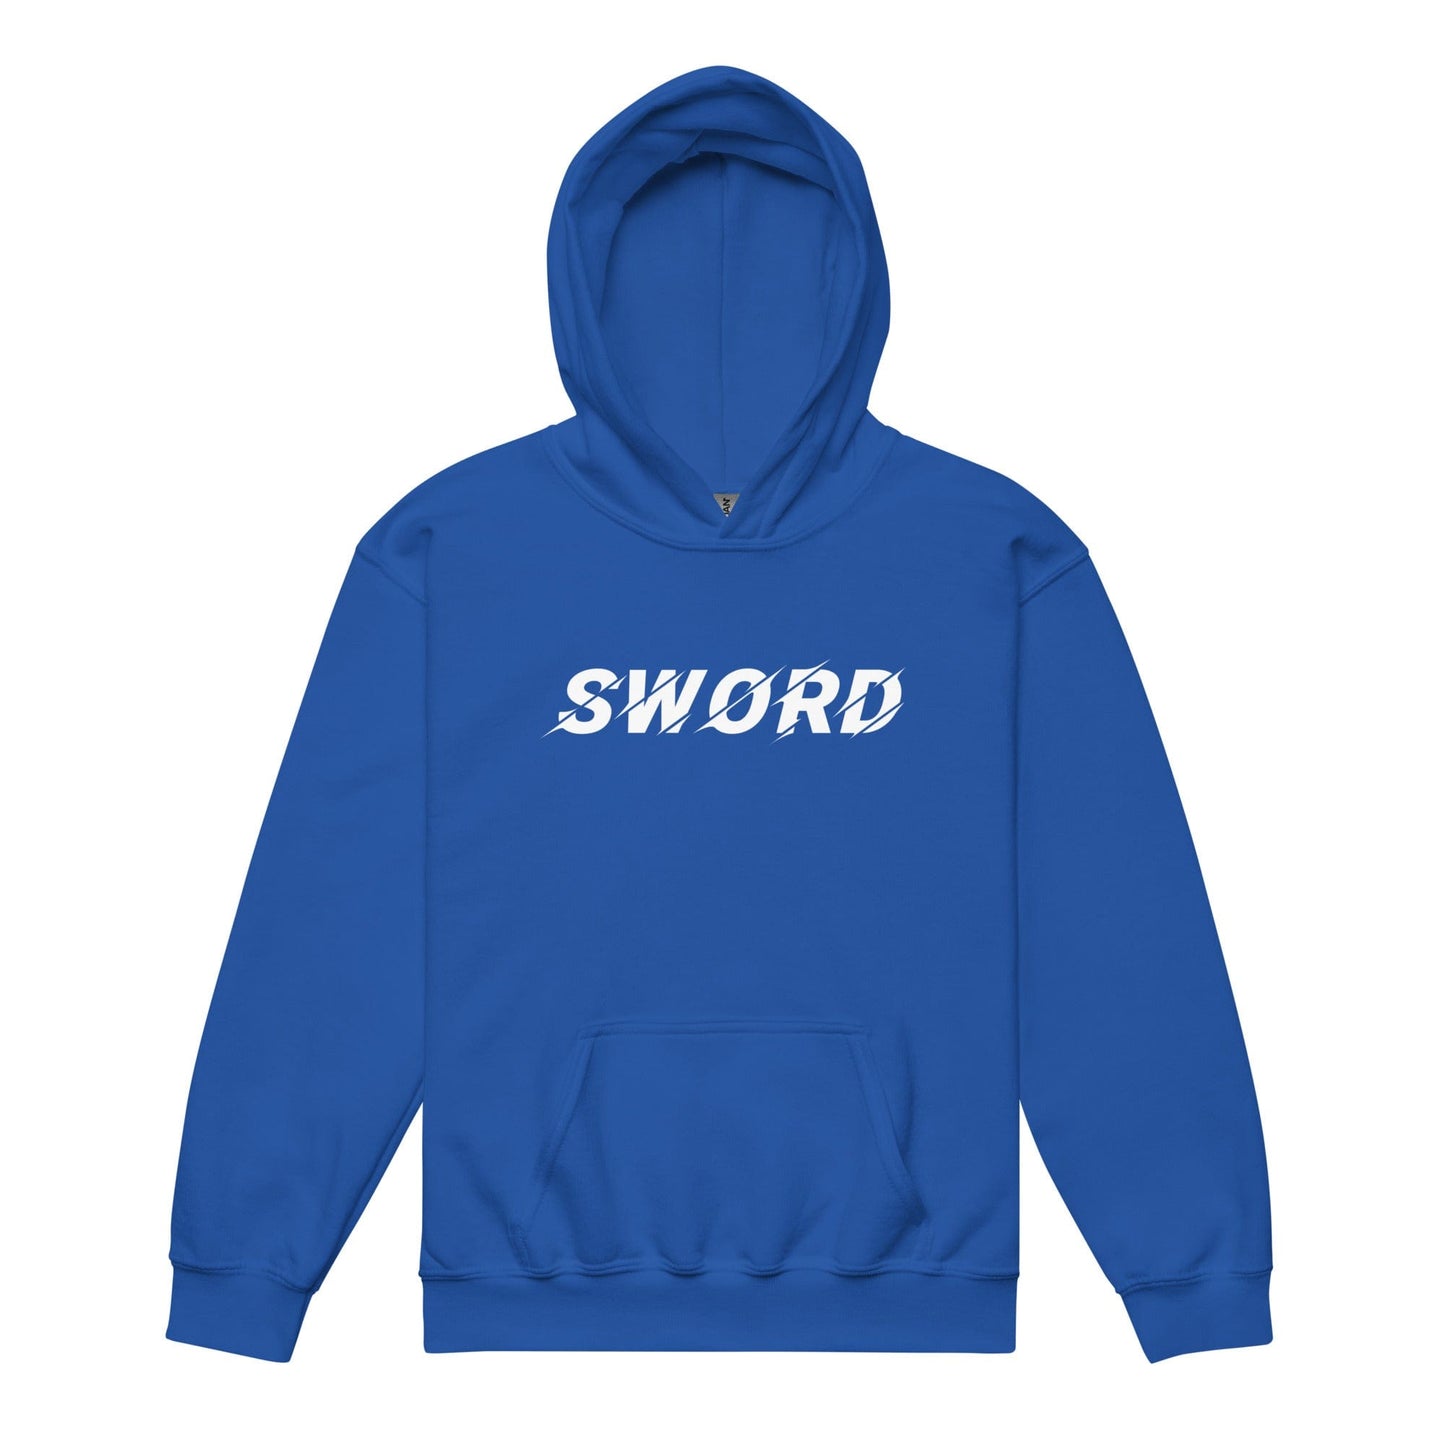 Sword - Youth Hoodie